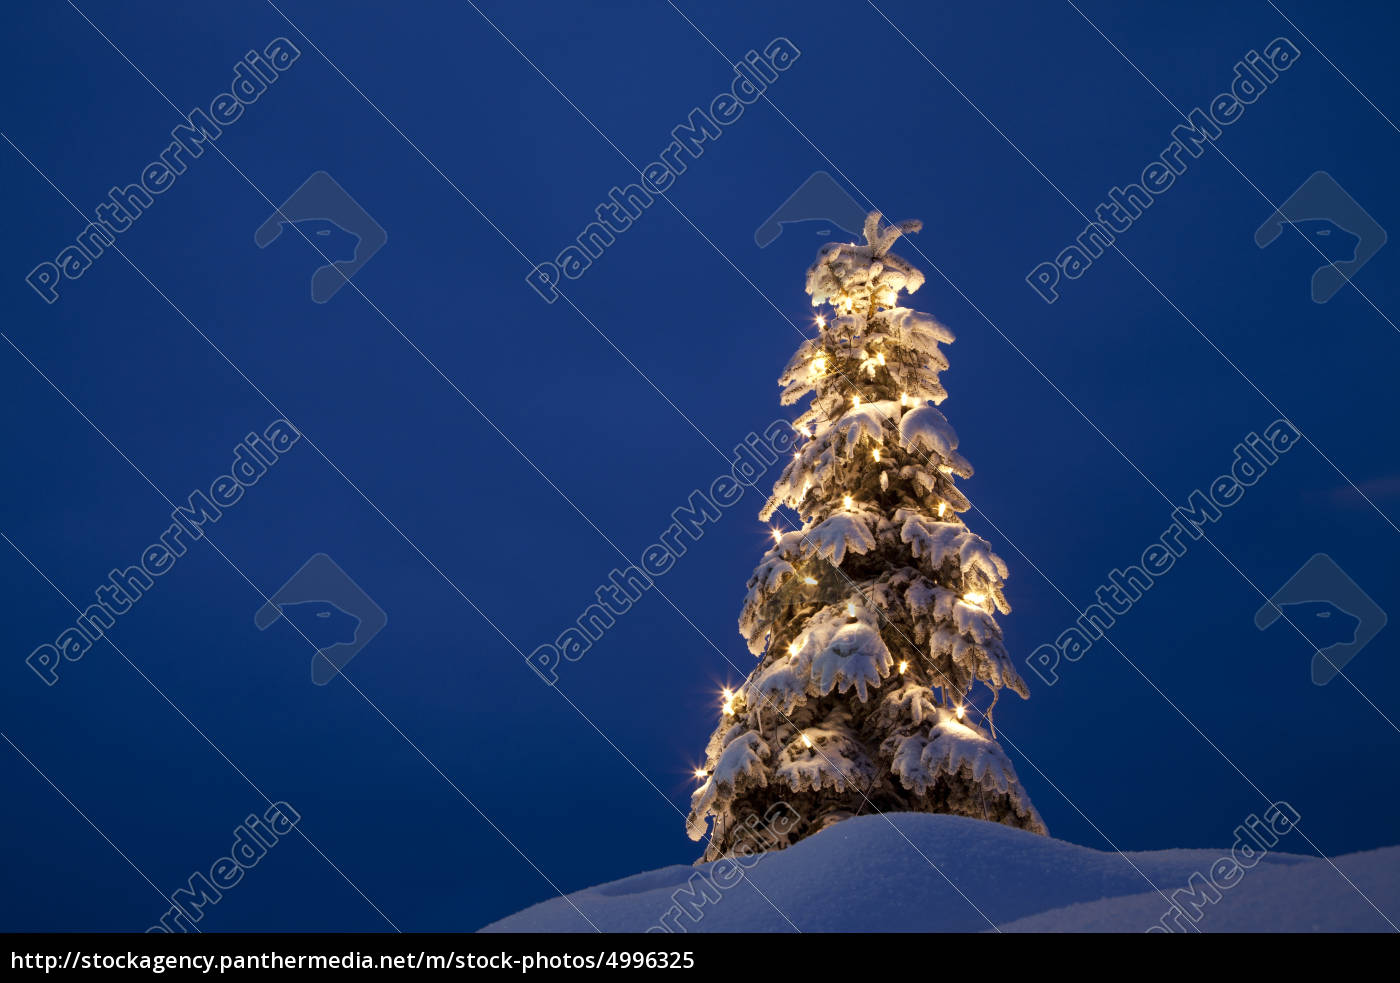 Albero Di Natale Java.Albero Di Natale Nella Neve Inverno Foto Stock 4996325 Comprate Immagini Rf Da Panthermedia